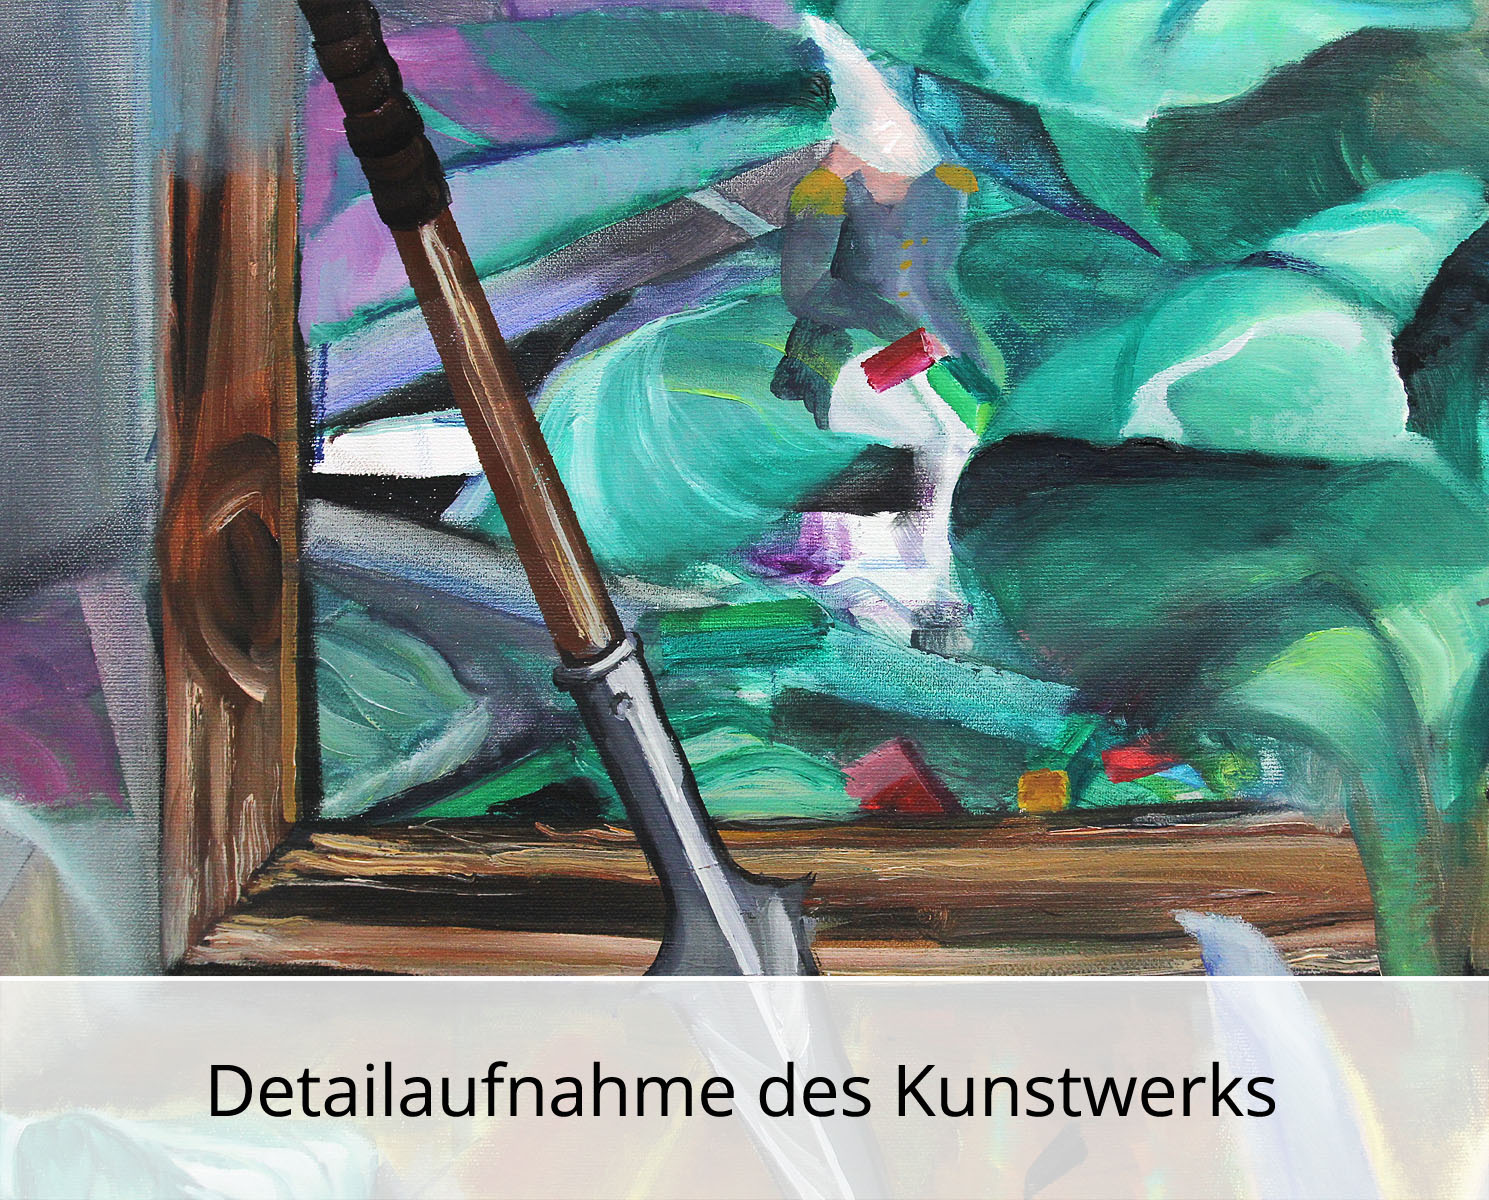 D. Block: "Der Hase schleicht auf leisen Pfoten", Original/Unikat, expressive Ölmalerei